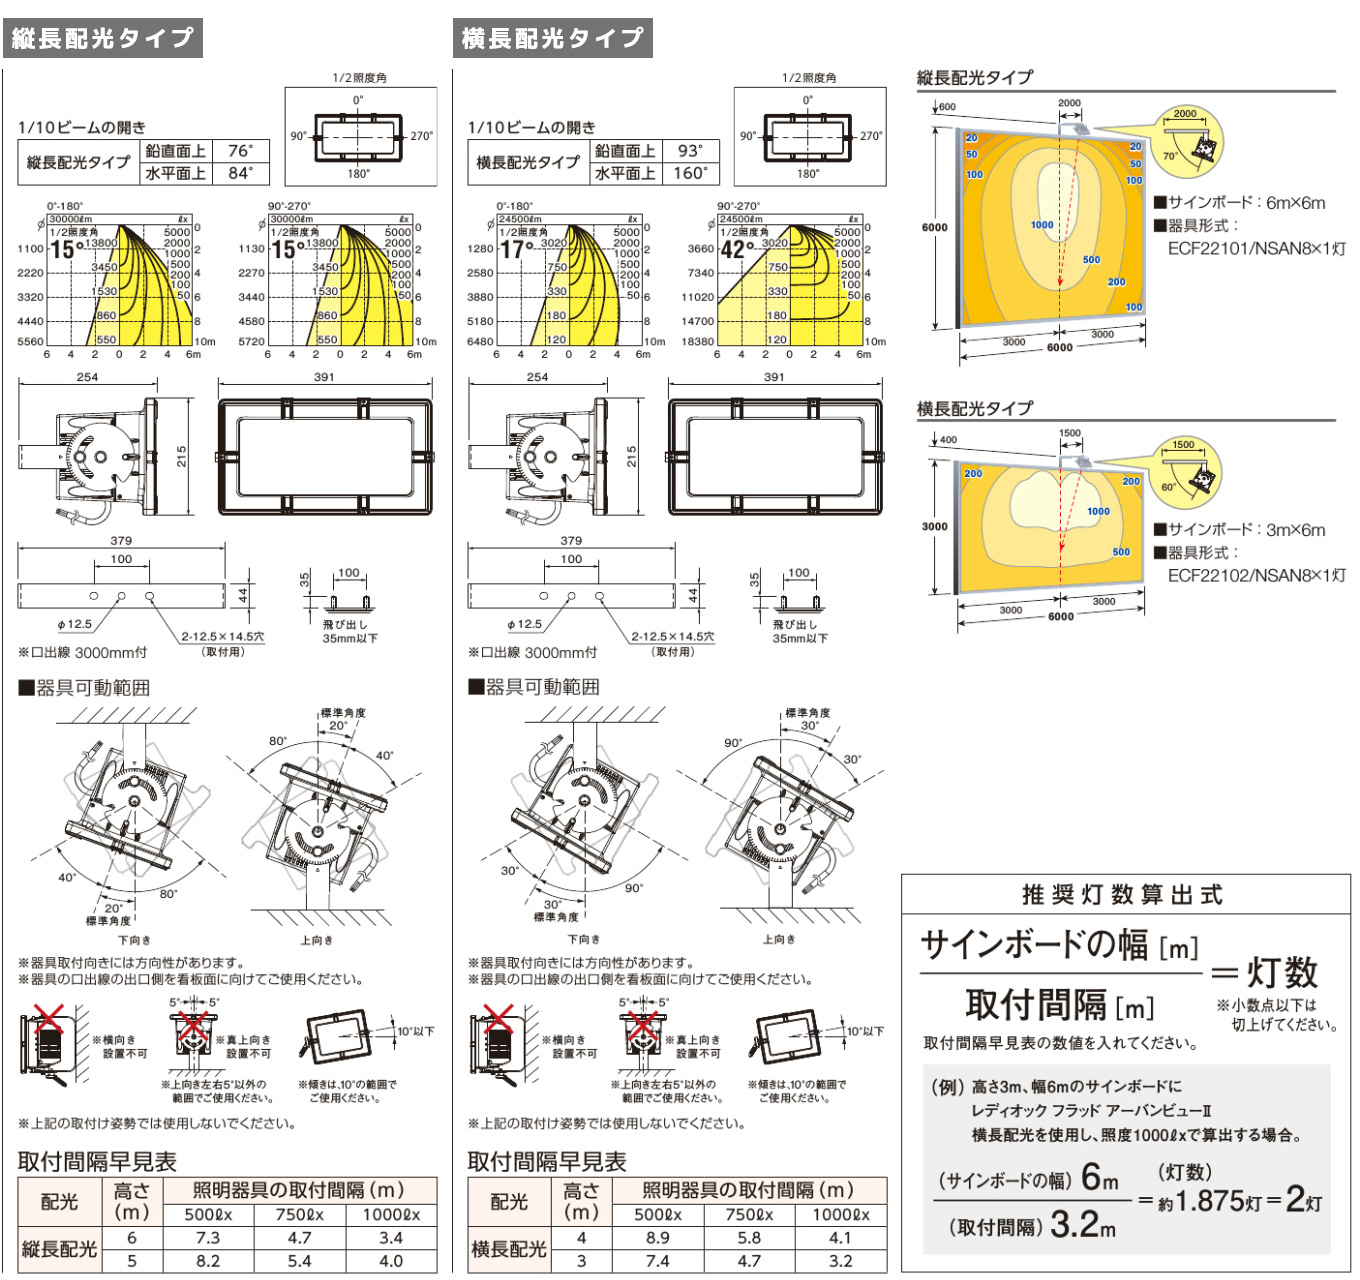 岩崎電気 レディオック フラッドアーバンビュー特集【ジャパンライティング.jp】-LEDモジュール・RGB・LED電源装置の専門サプライヤー